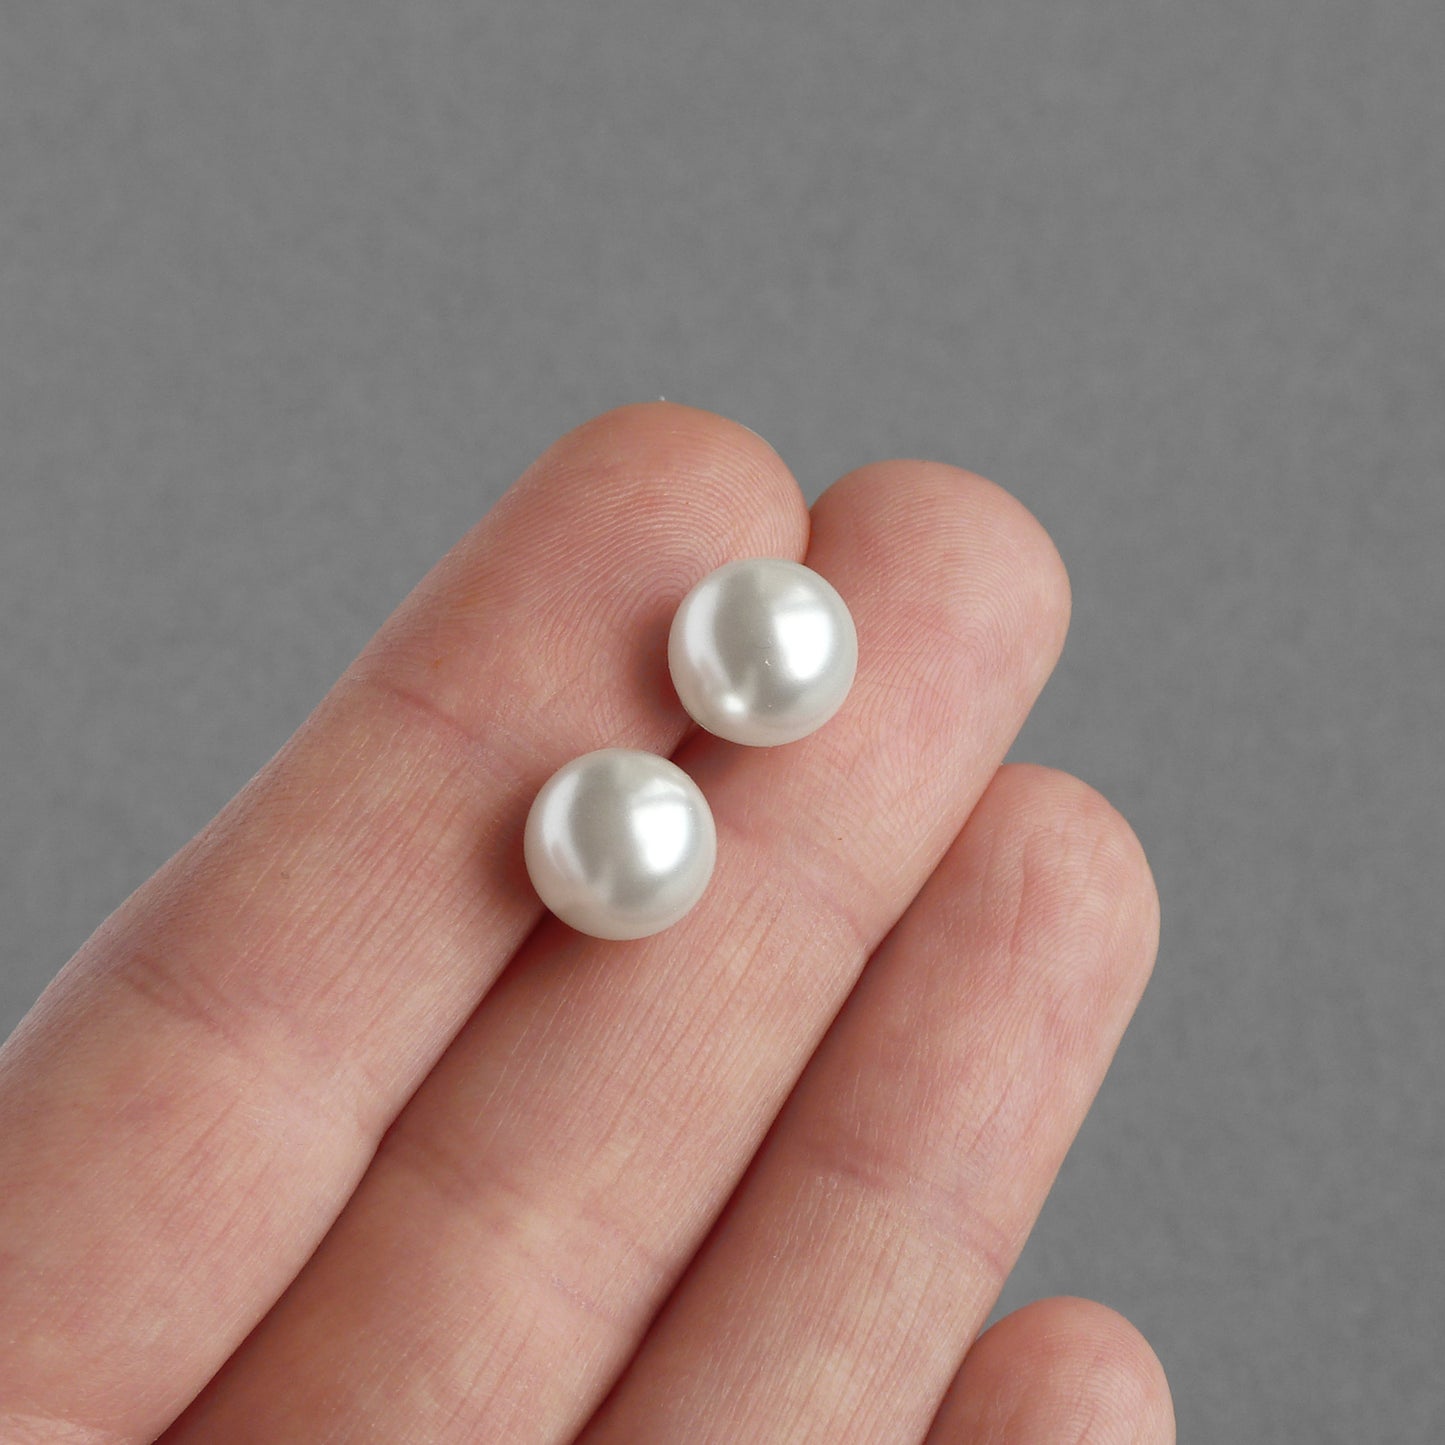 10mm white pearl stud earrings